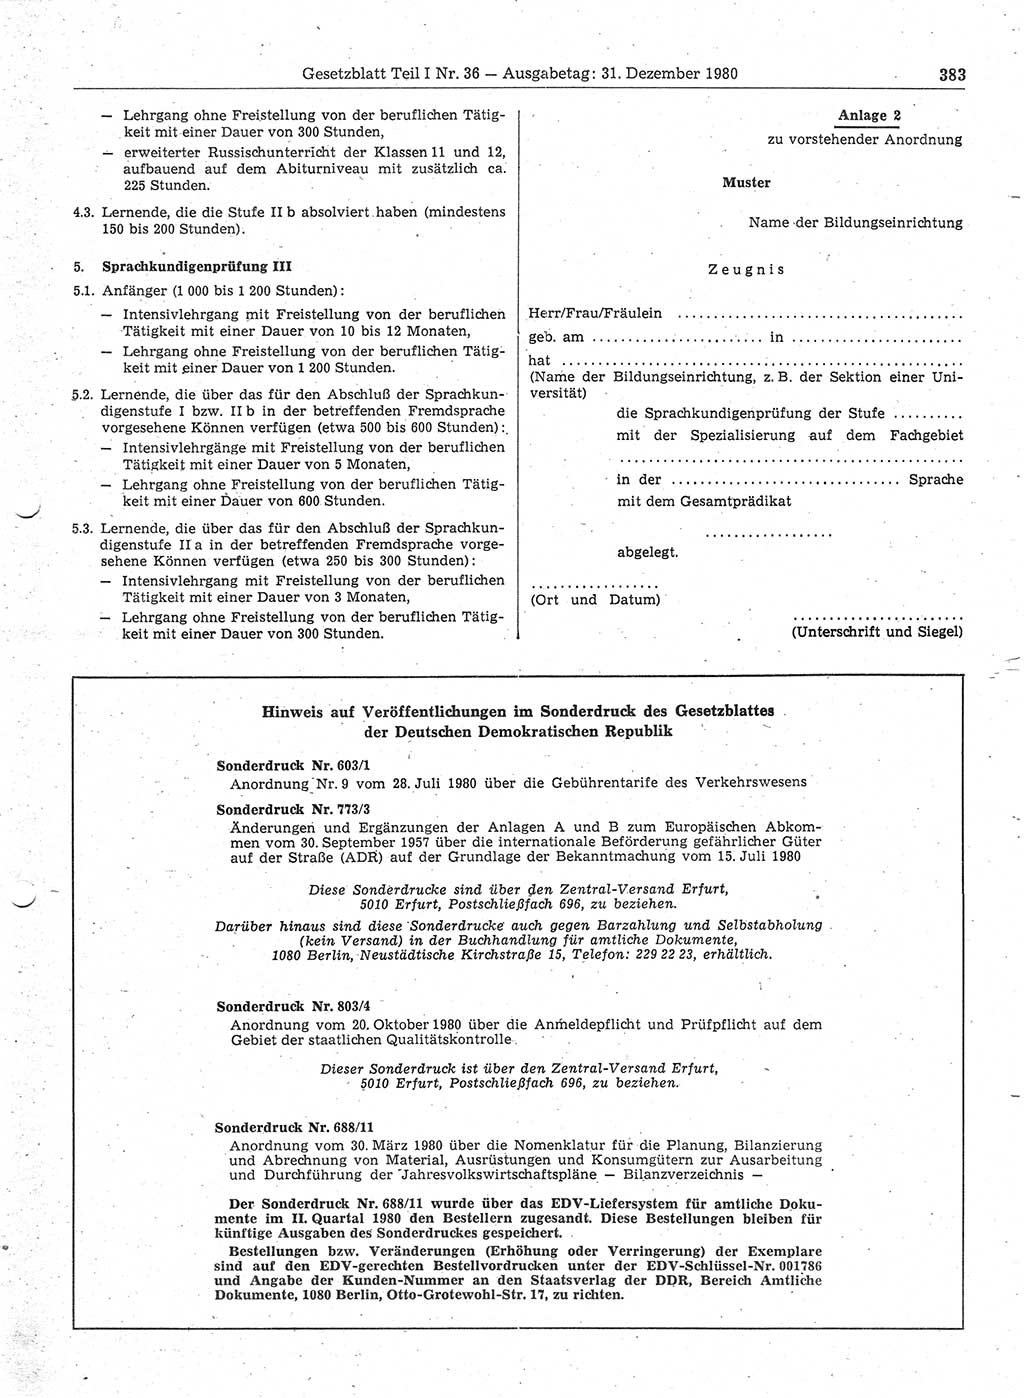 Gesetzblatt (GBl.) der Deutschen Demokratischen Republik (DDR) Teil Ⅰ 1980, Seite 383 (GBl. DDR Ⅰ 1980, S. 383)